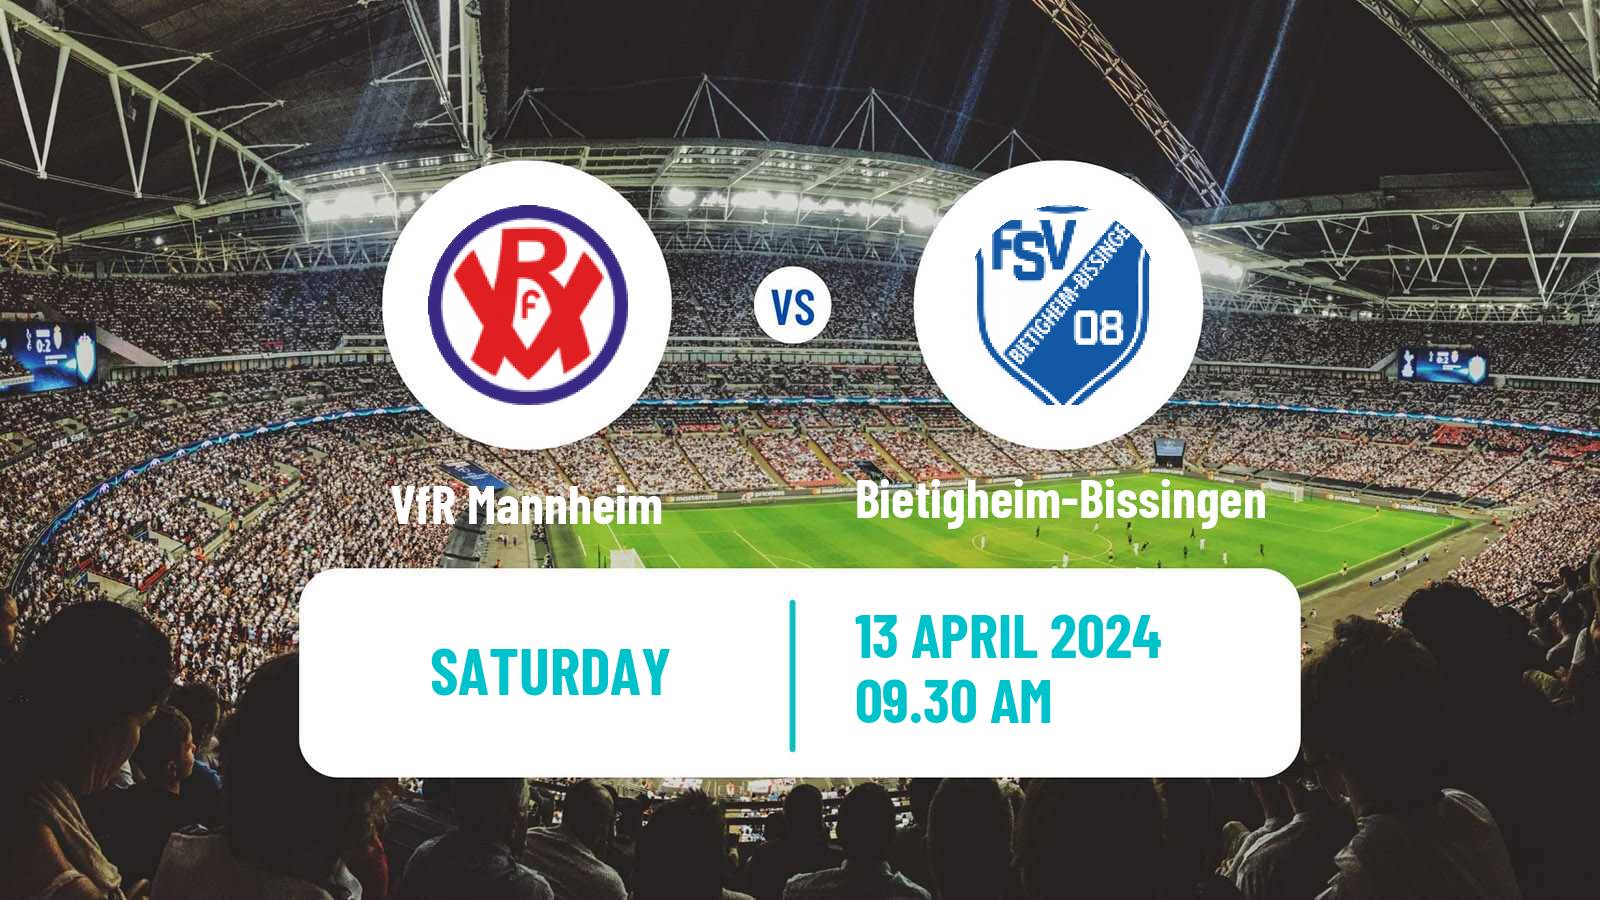 Soccer German Oberliga Baden-Württemberg VfR Mannheim - Bietigheim-Bissingen